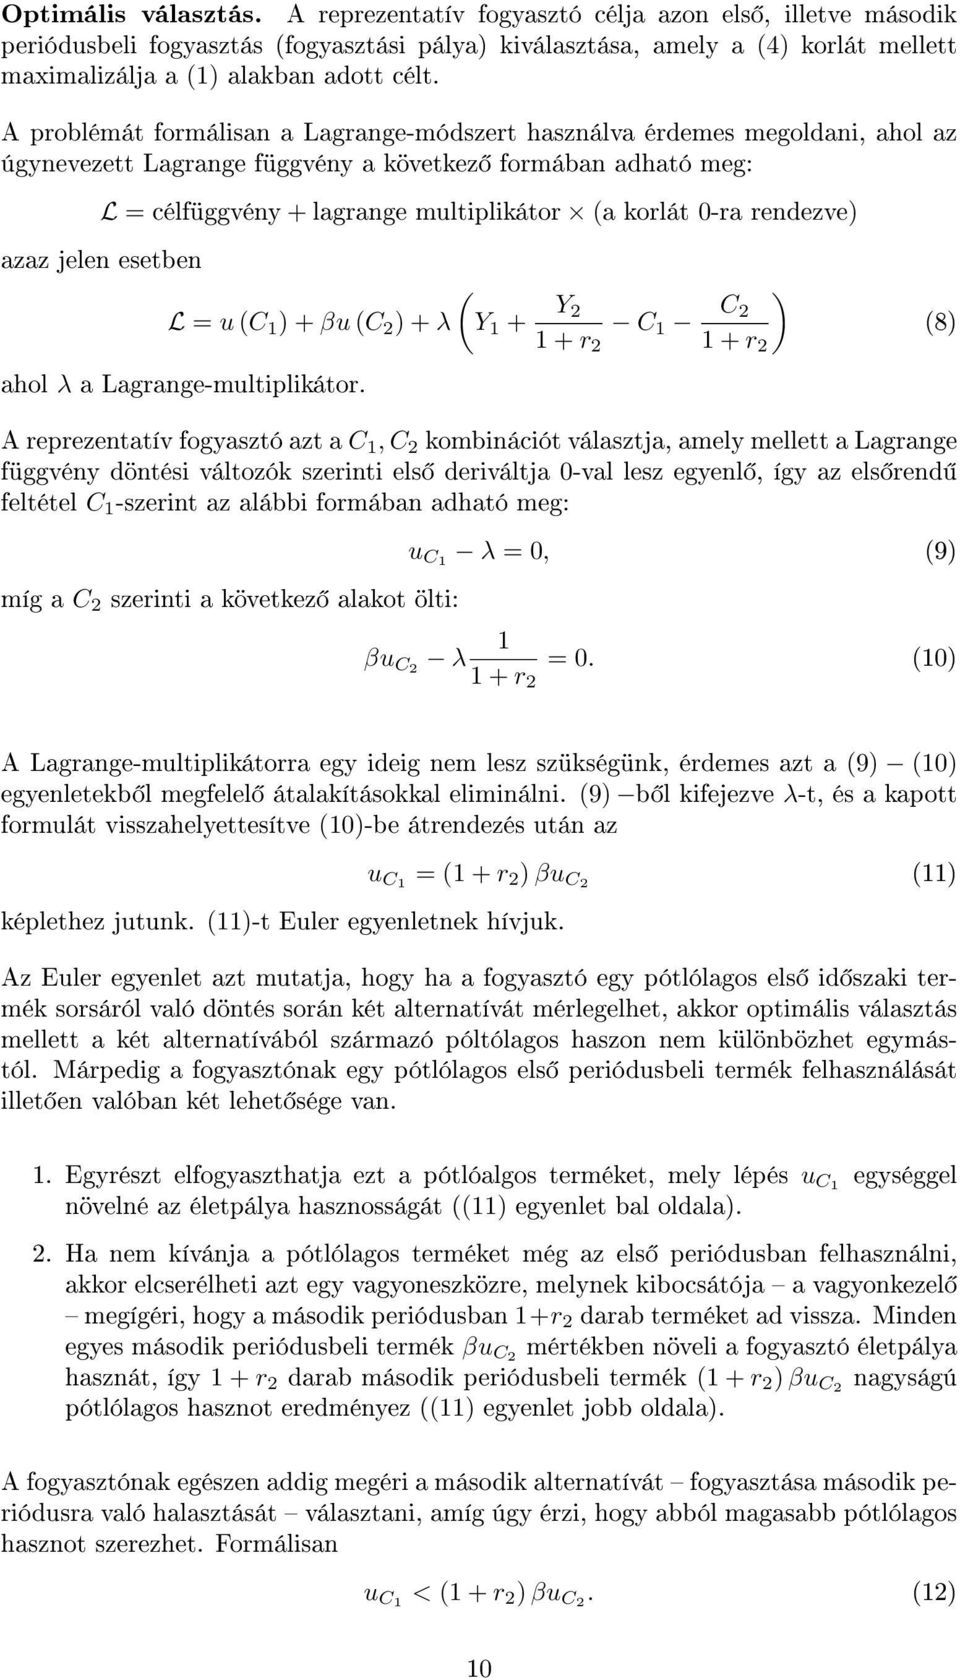 A problémát formálisan a Lagrange-módszert használva érdemes megoldani, ahol az úgynevezett Lagrange függvény a következ formában adható meg: L = célfüggvény + lagrange multiplikátor (a korlát 0-ra